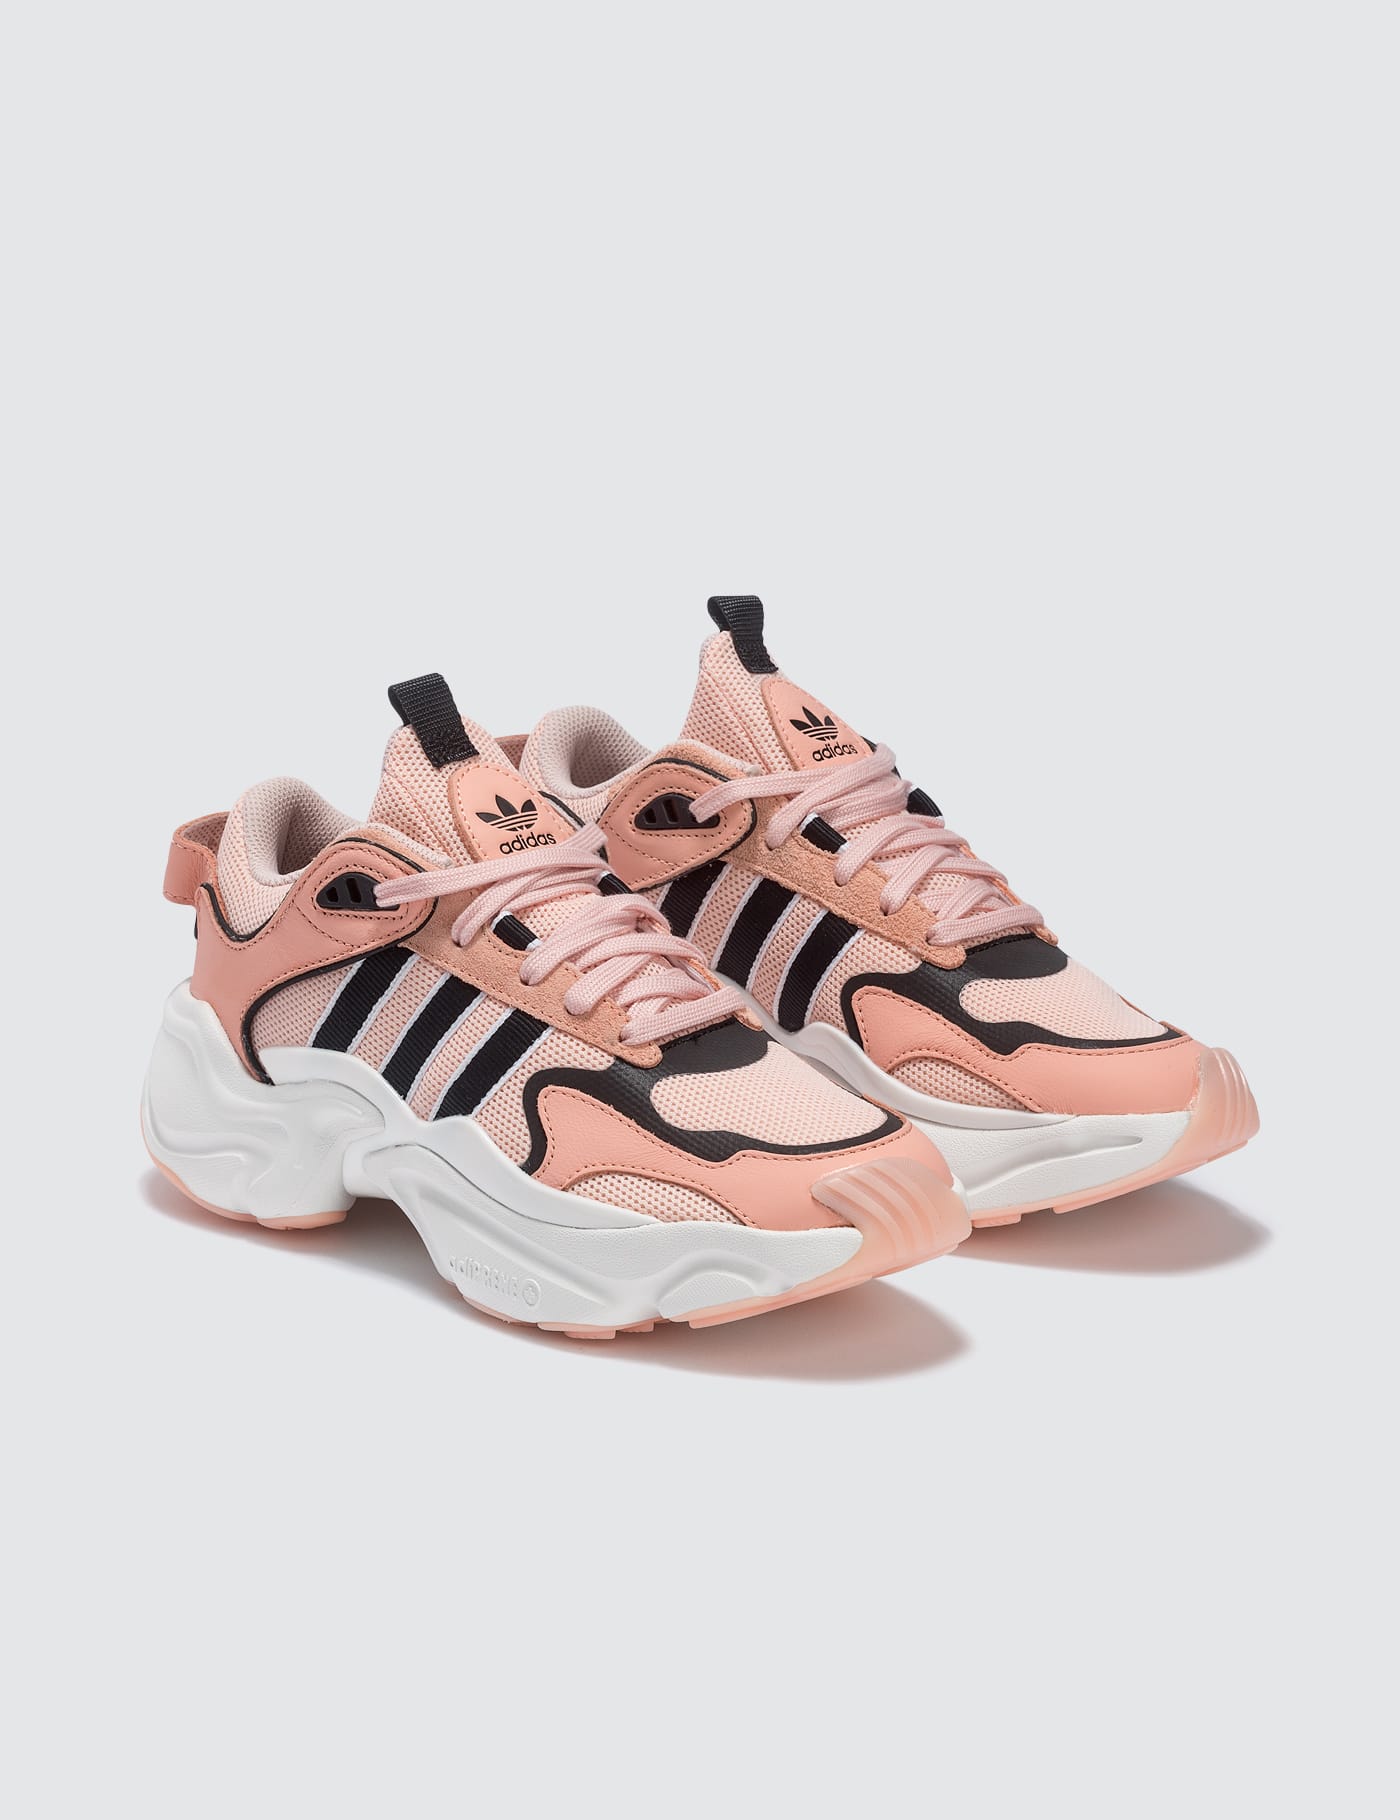 magmur runner shoes glow pink